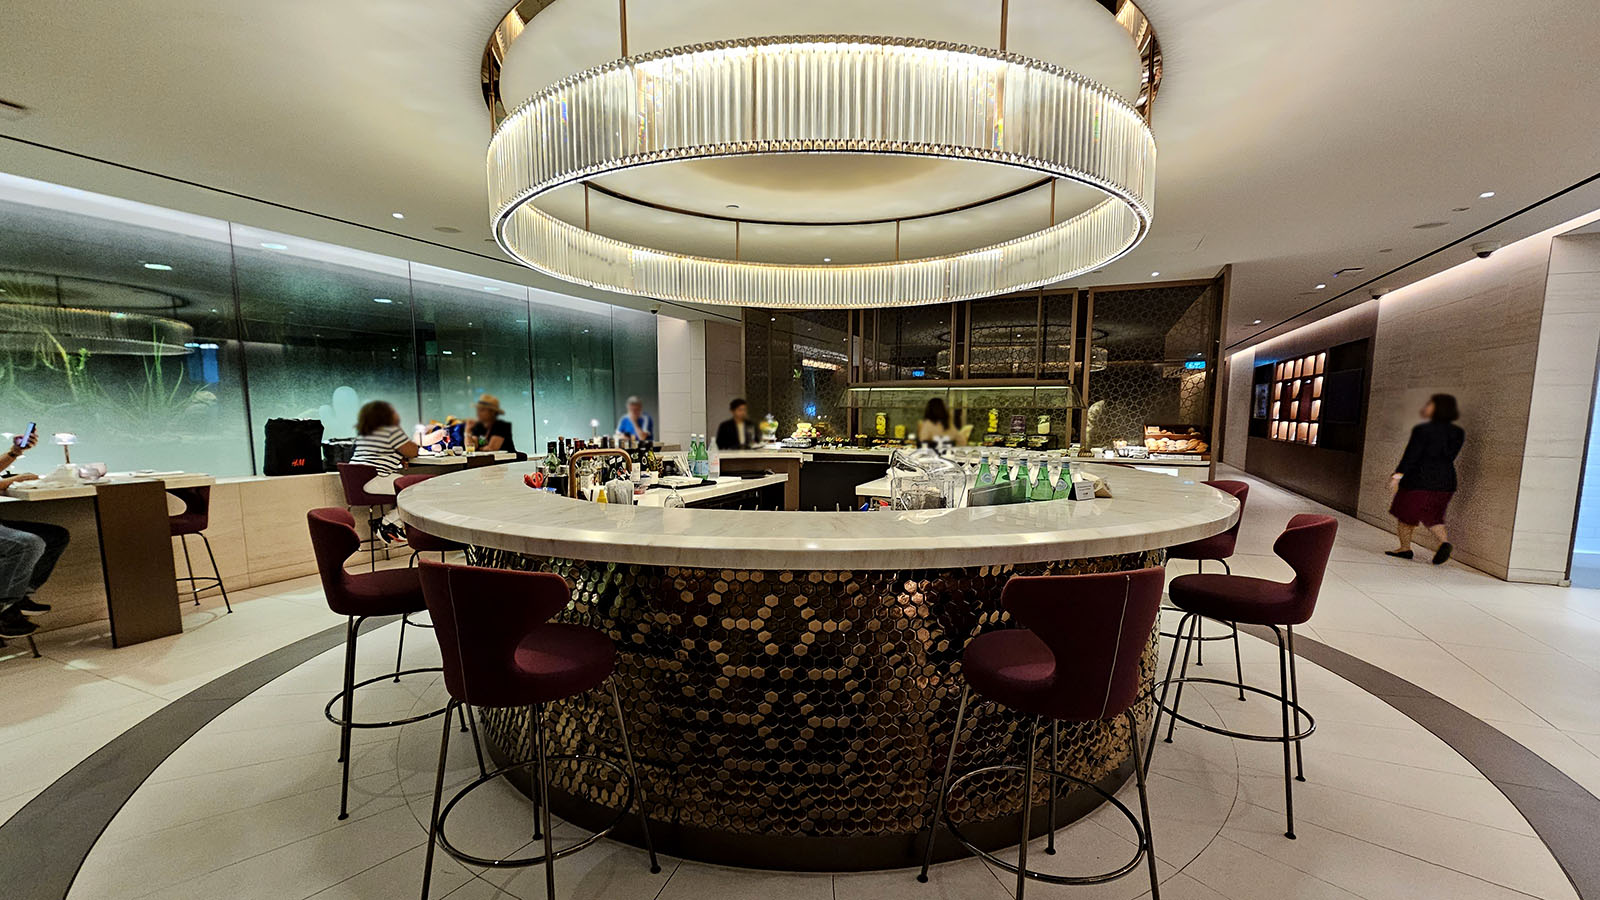 Service area in the Qatar Airways Premium Lounge, Singapore